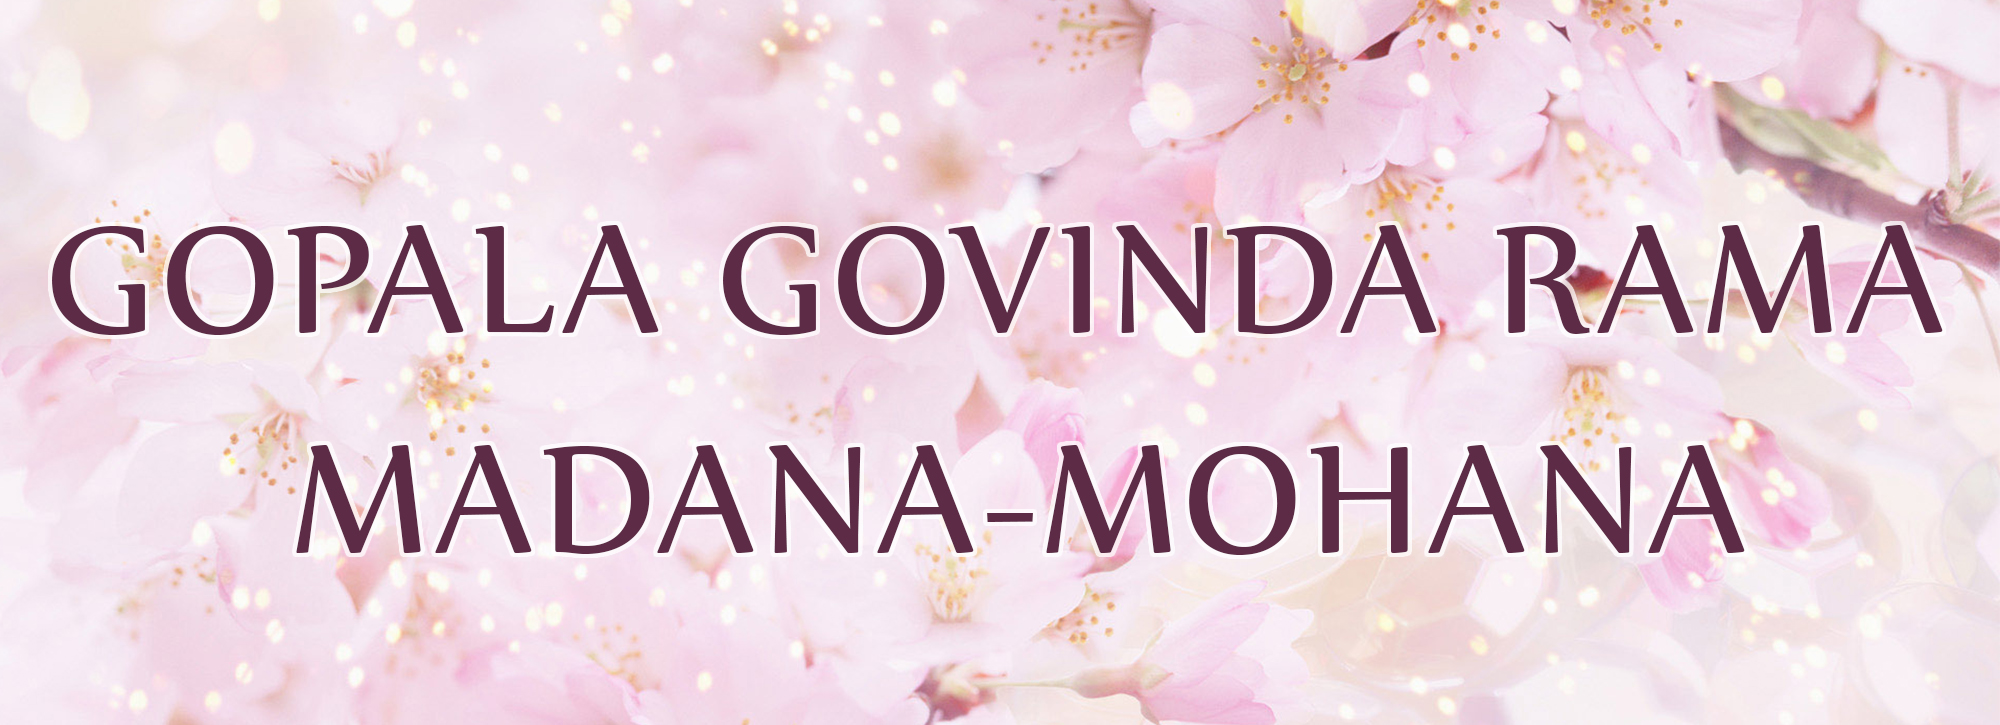 GOPALA GOVINDA RAMA MADANA-MOHANA